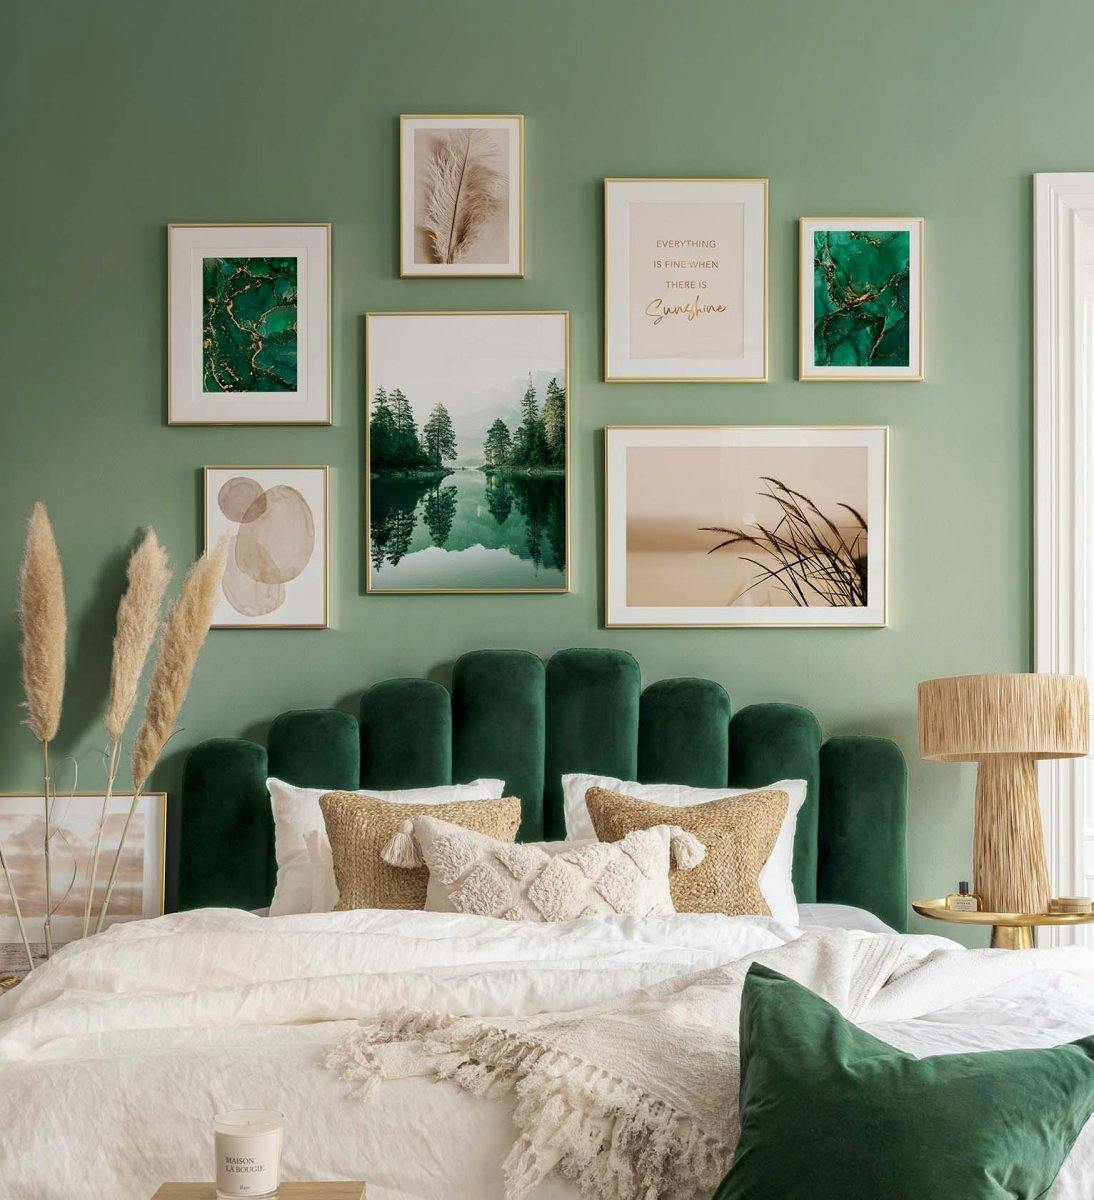 Ściana galerii z nadrukami natury w kolorze zielonym i beżowym ze złotymi ramkami do sypialni